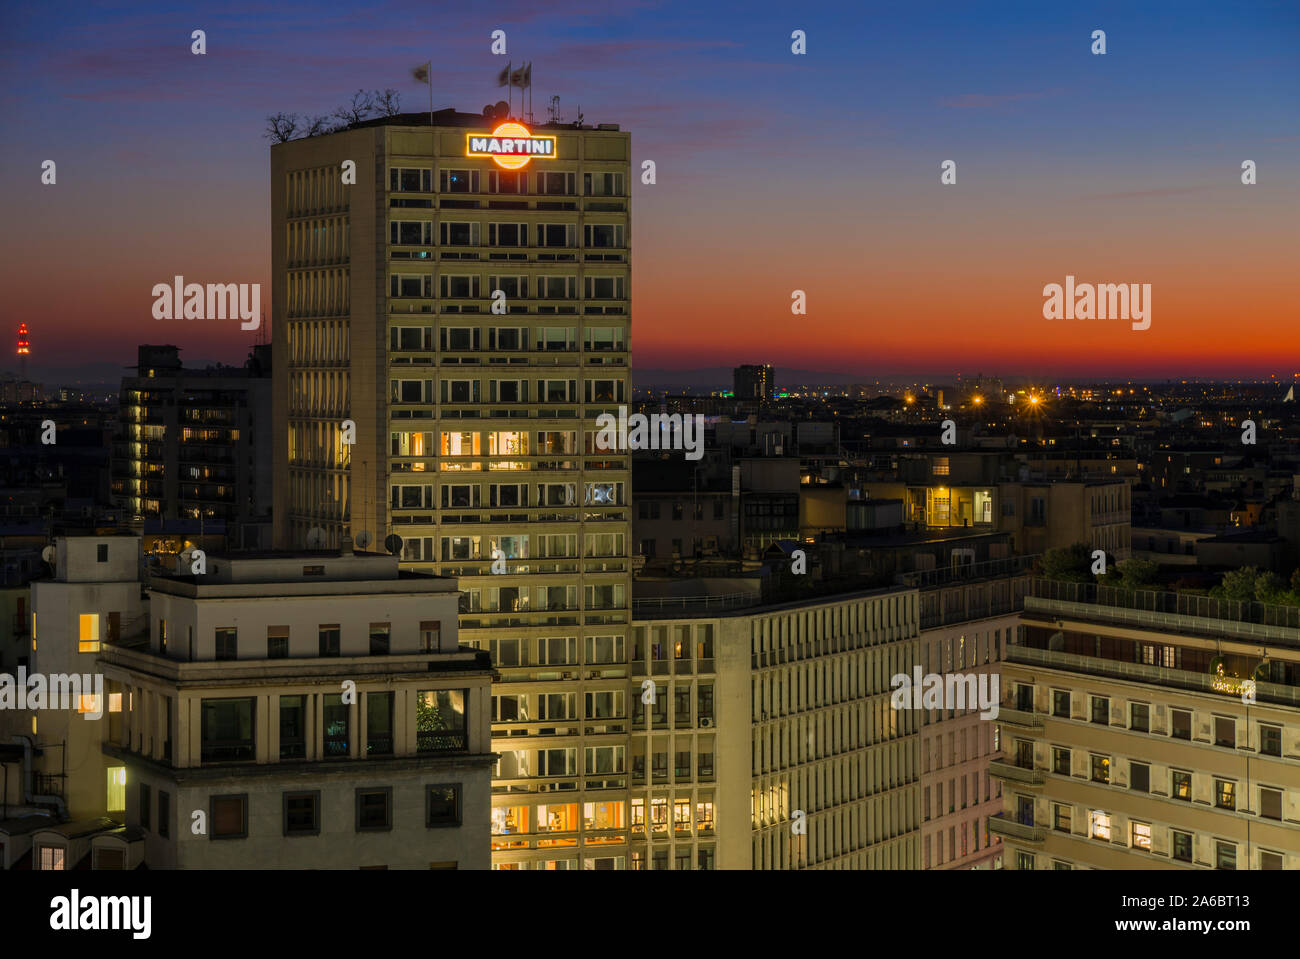 Milano, Italia: Milano cityscape al tramonto, il grattacielo in Piazza Diaz, con la Terrazza (Terrazza) Martini sul tetto. Il logo Martini sulla facciata. Foto Stock